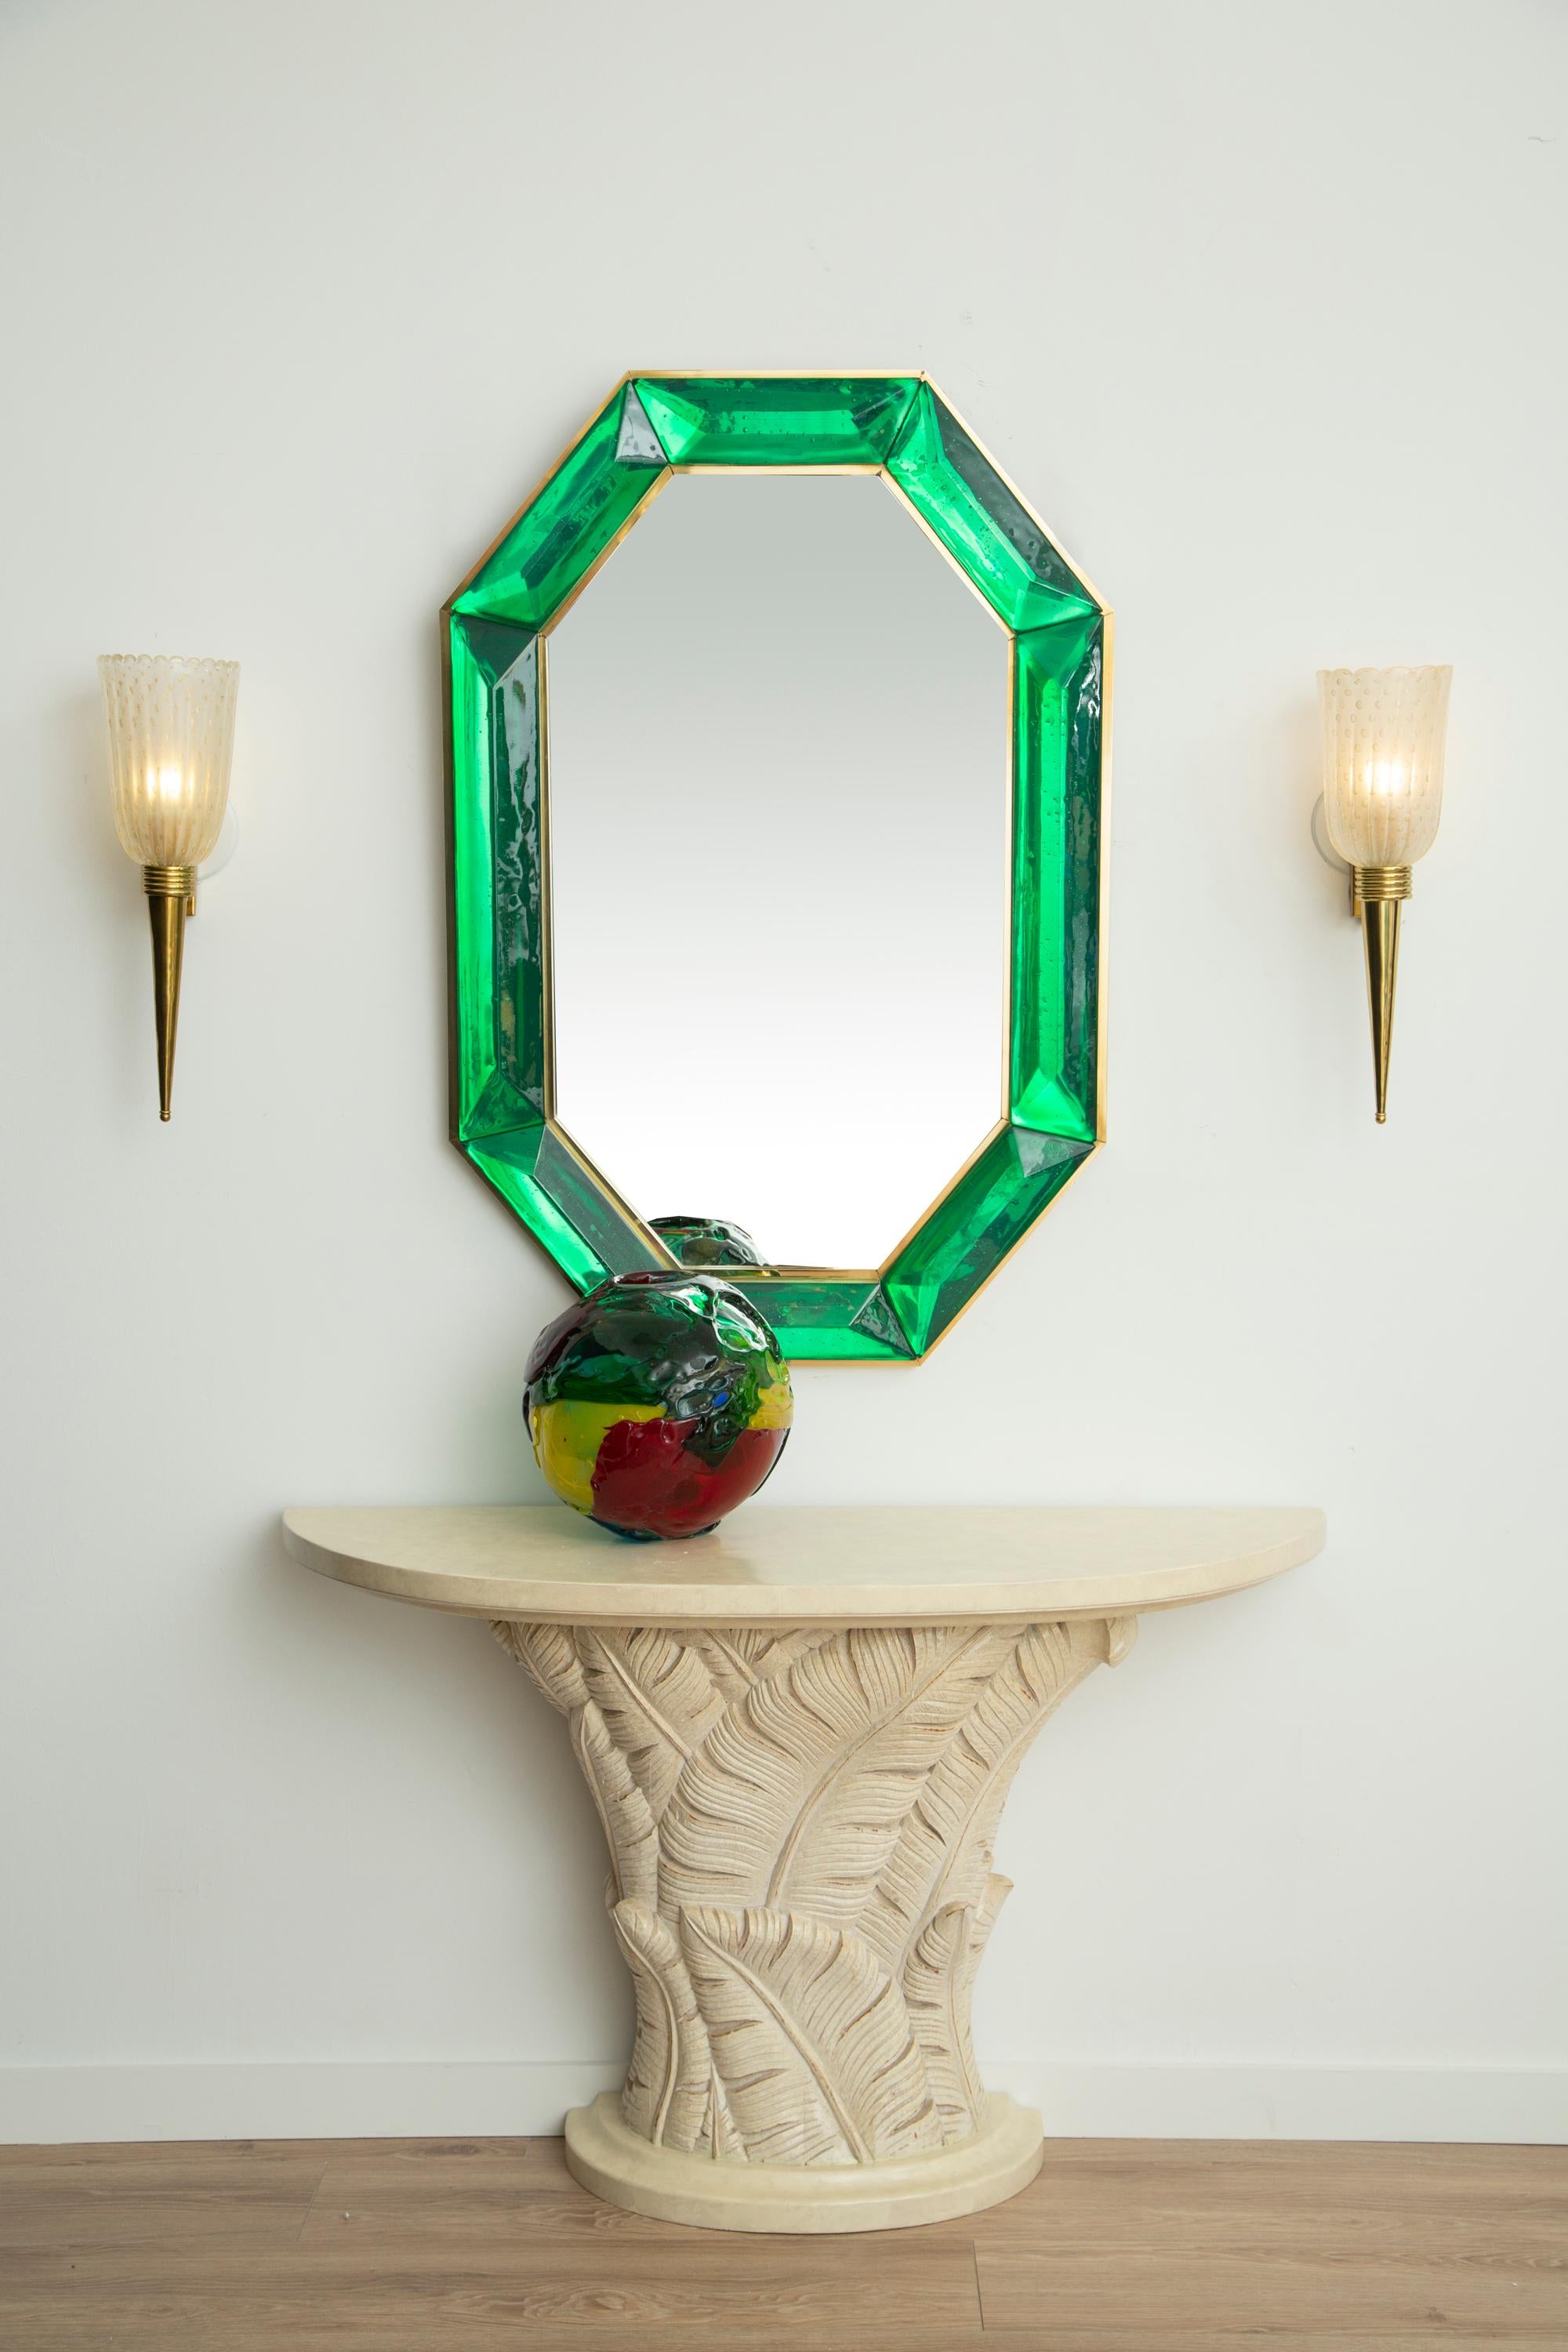 Achteckiger smaragdgrüner Murano-Glasspiegel nach Maß, auf Lager
 Lebendiger und intensiver smaragdgrüner Glasstein mit natürlich vorkommenden Lufteinschlüssen 
 Hochglanzpoliertes Facettenmuster
 Messing-Galerie rundherum
 Jeder Spiegel ist ein